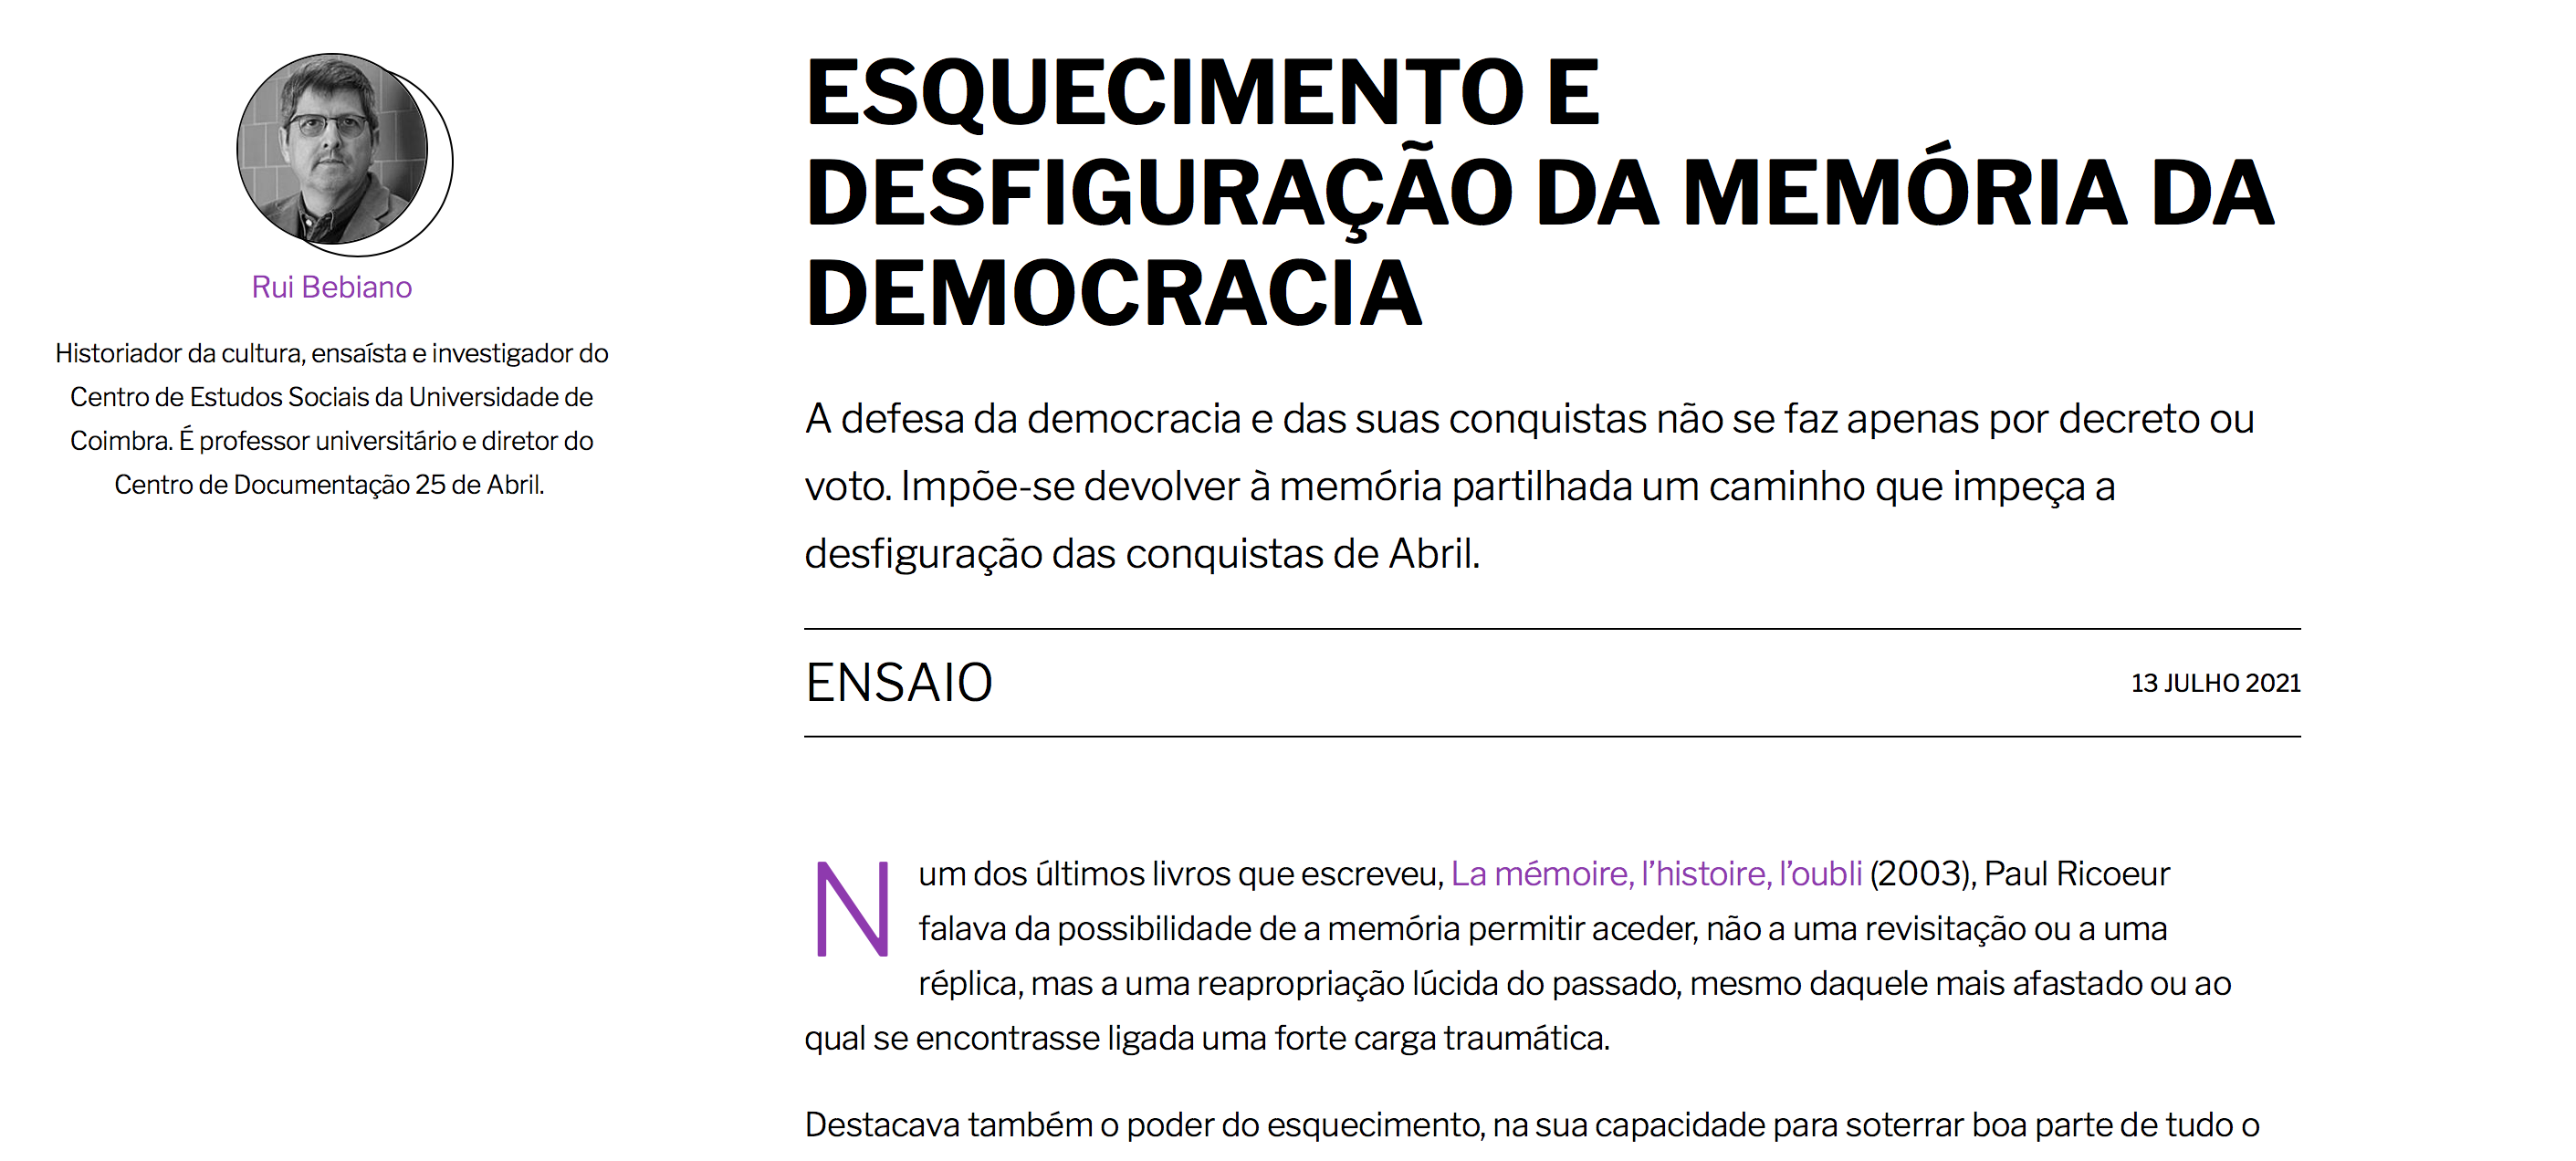 "ESQUECIMENTO E DESFIGURAÇÃO DA MEMÓRIA DA DEMOCRACIA"